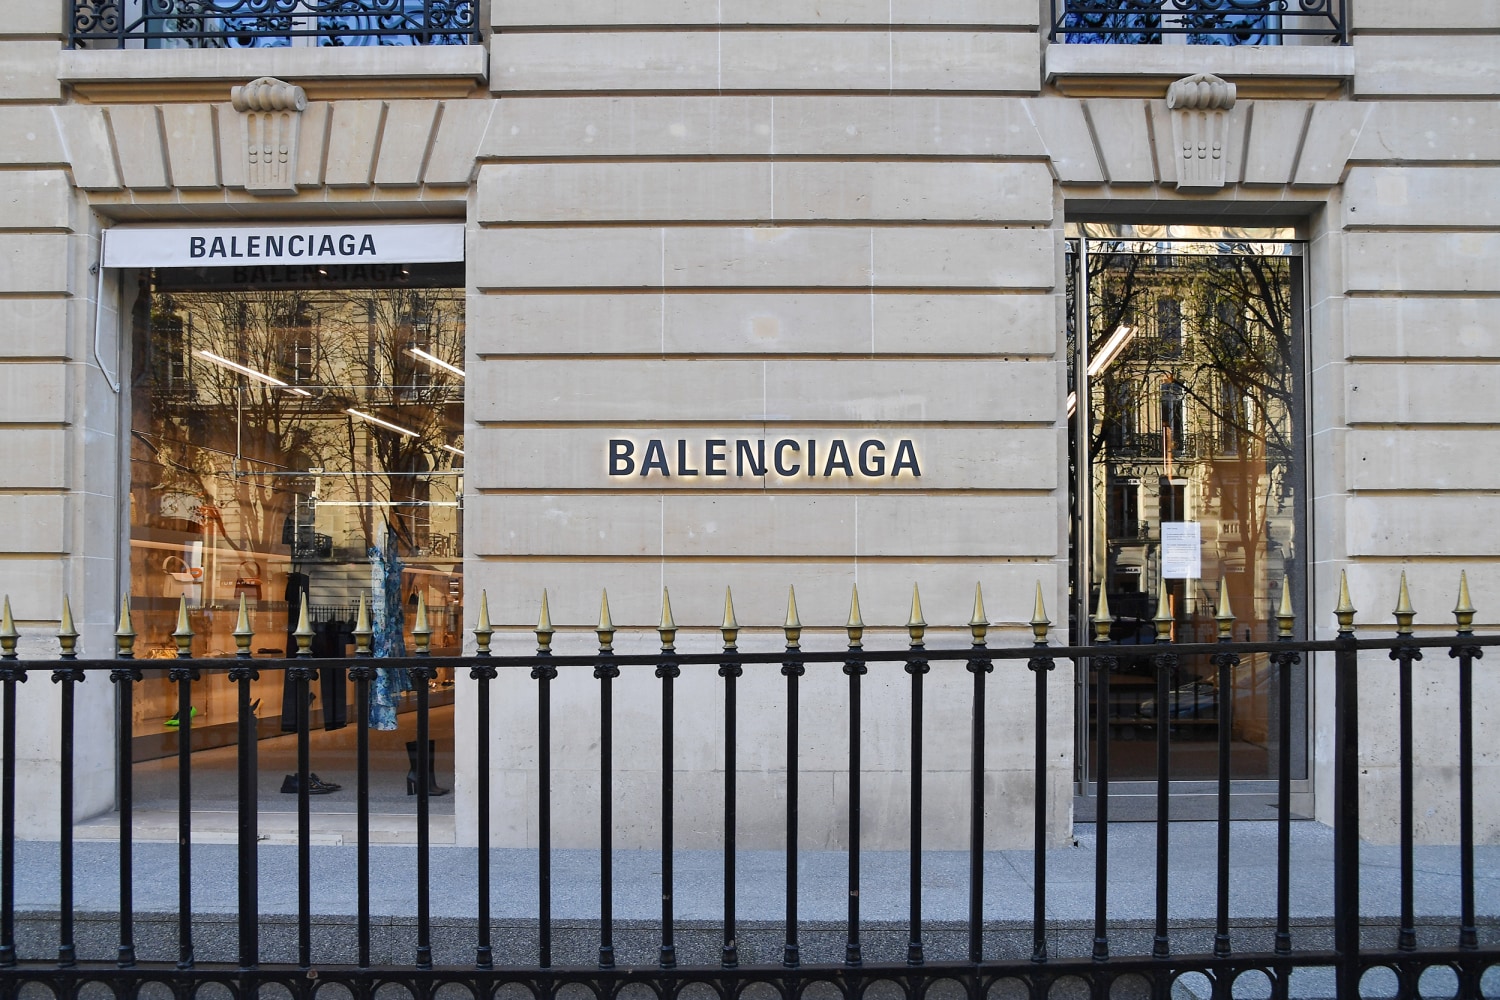 Balenciaga's creative director apologizes for 'wrong artistic choice of  concept